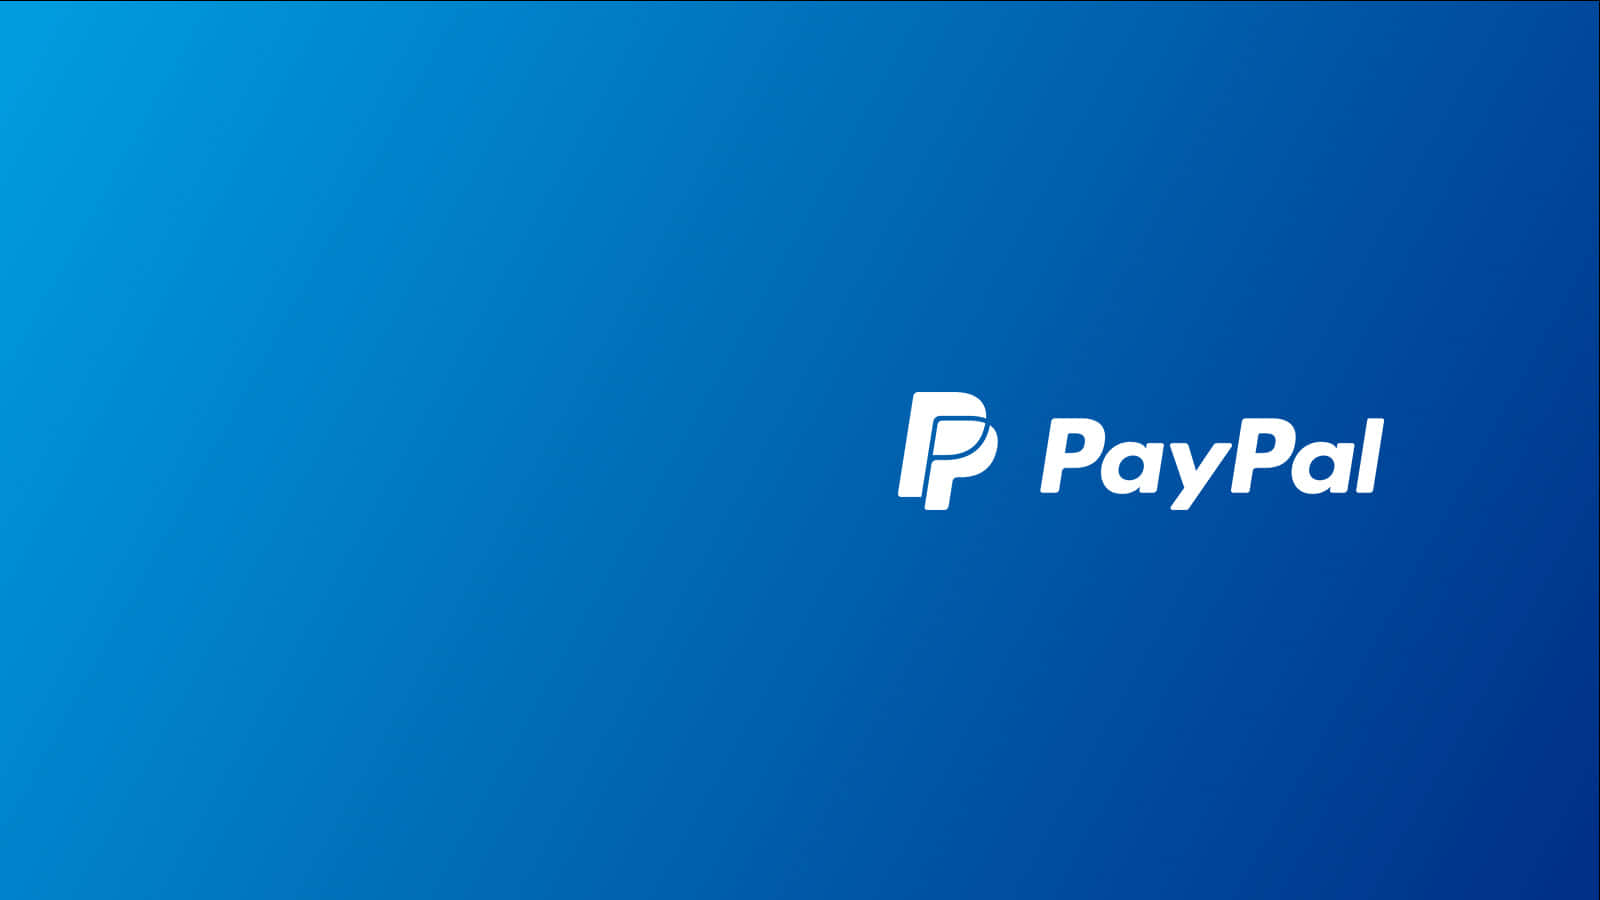 Faiacquisti E Pagamenti Online In Sicurezza Con Paypal.